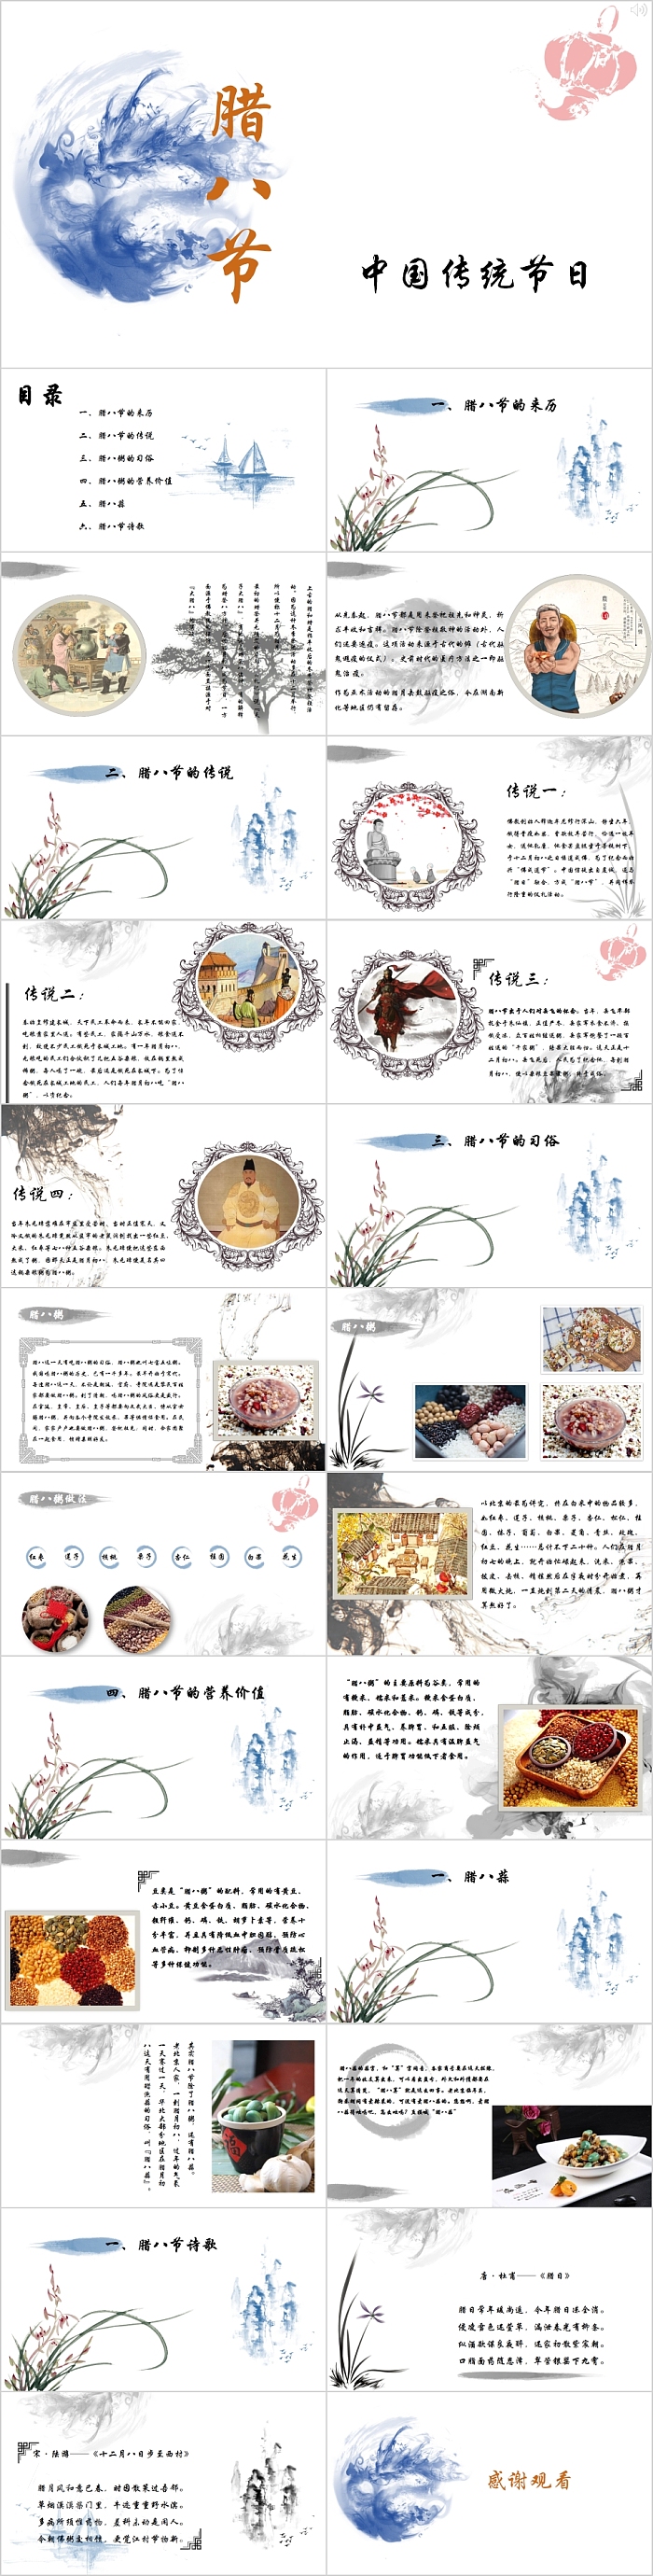 水墨风腊八节传统节日传统文化介绍PPT模板